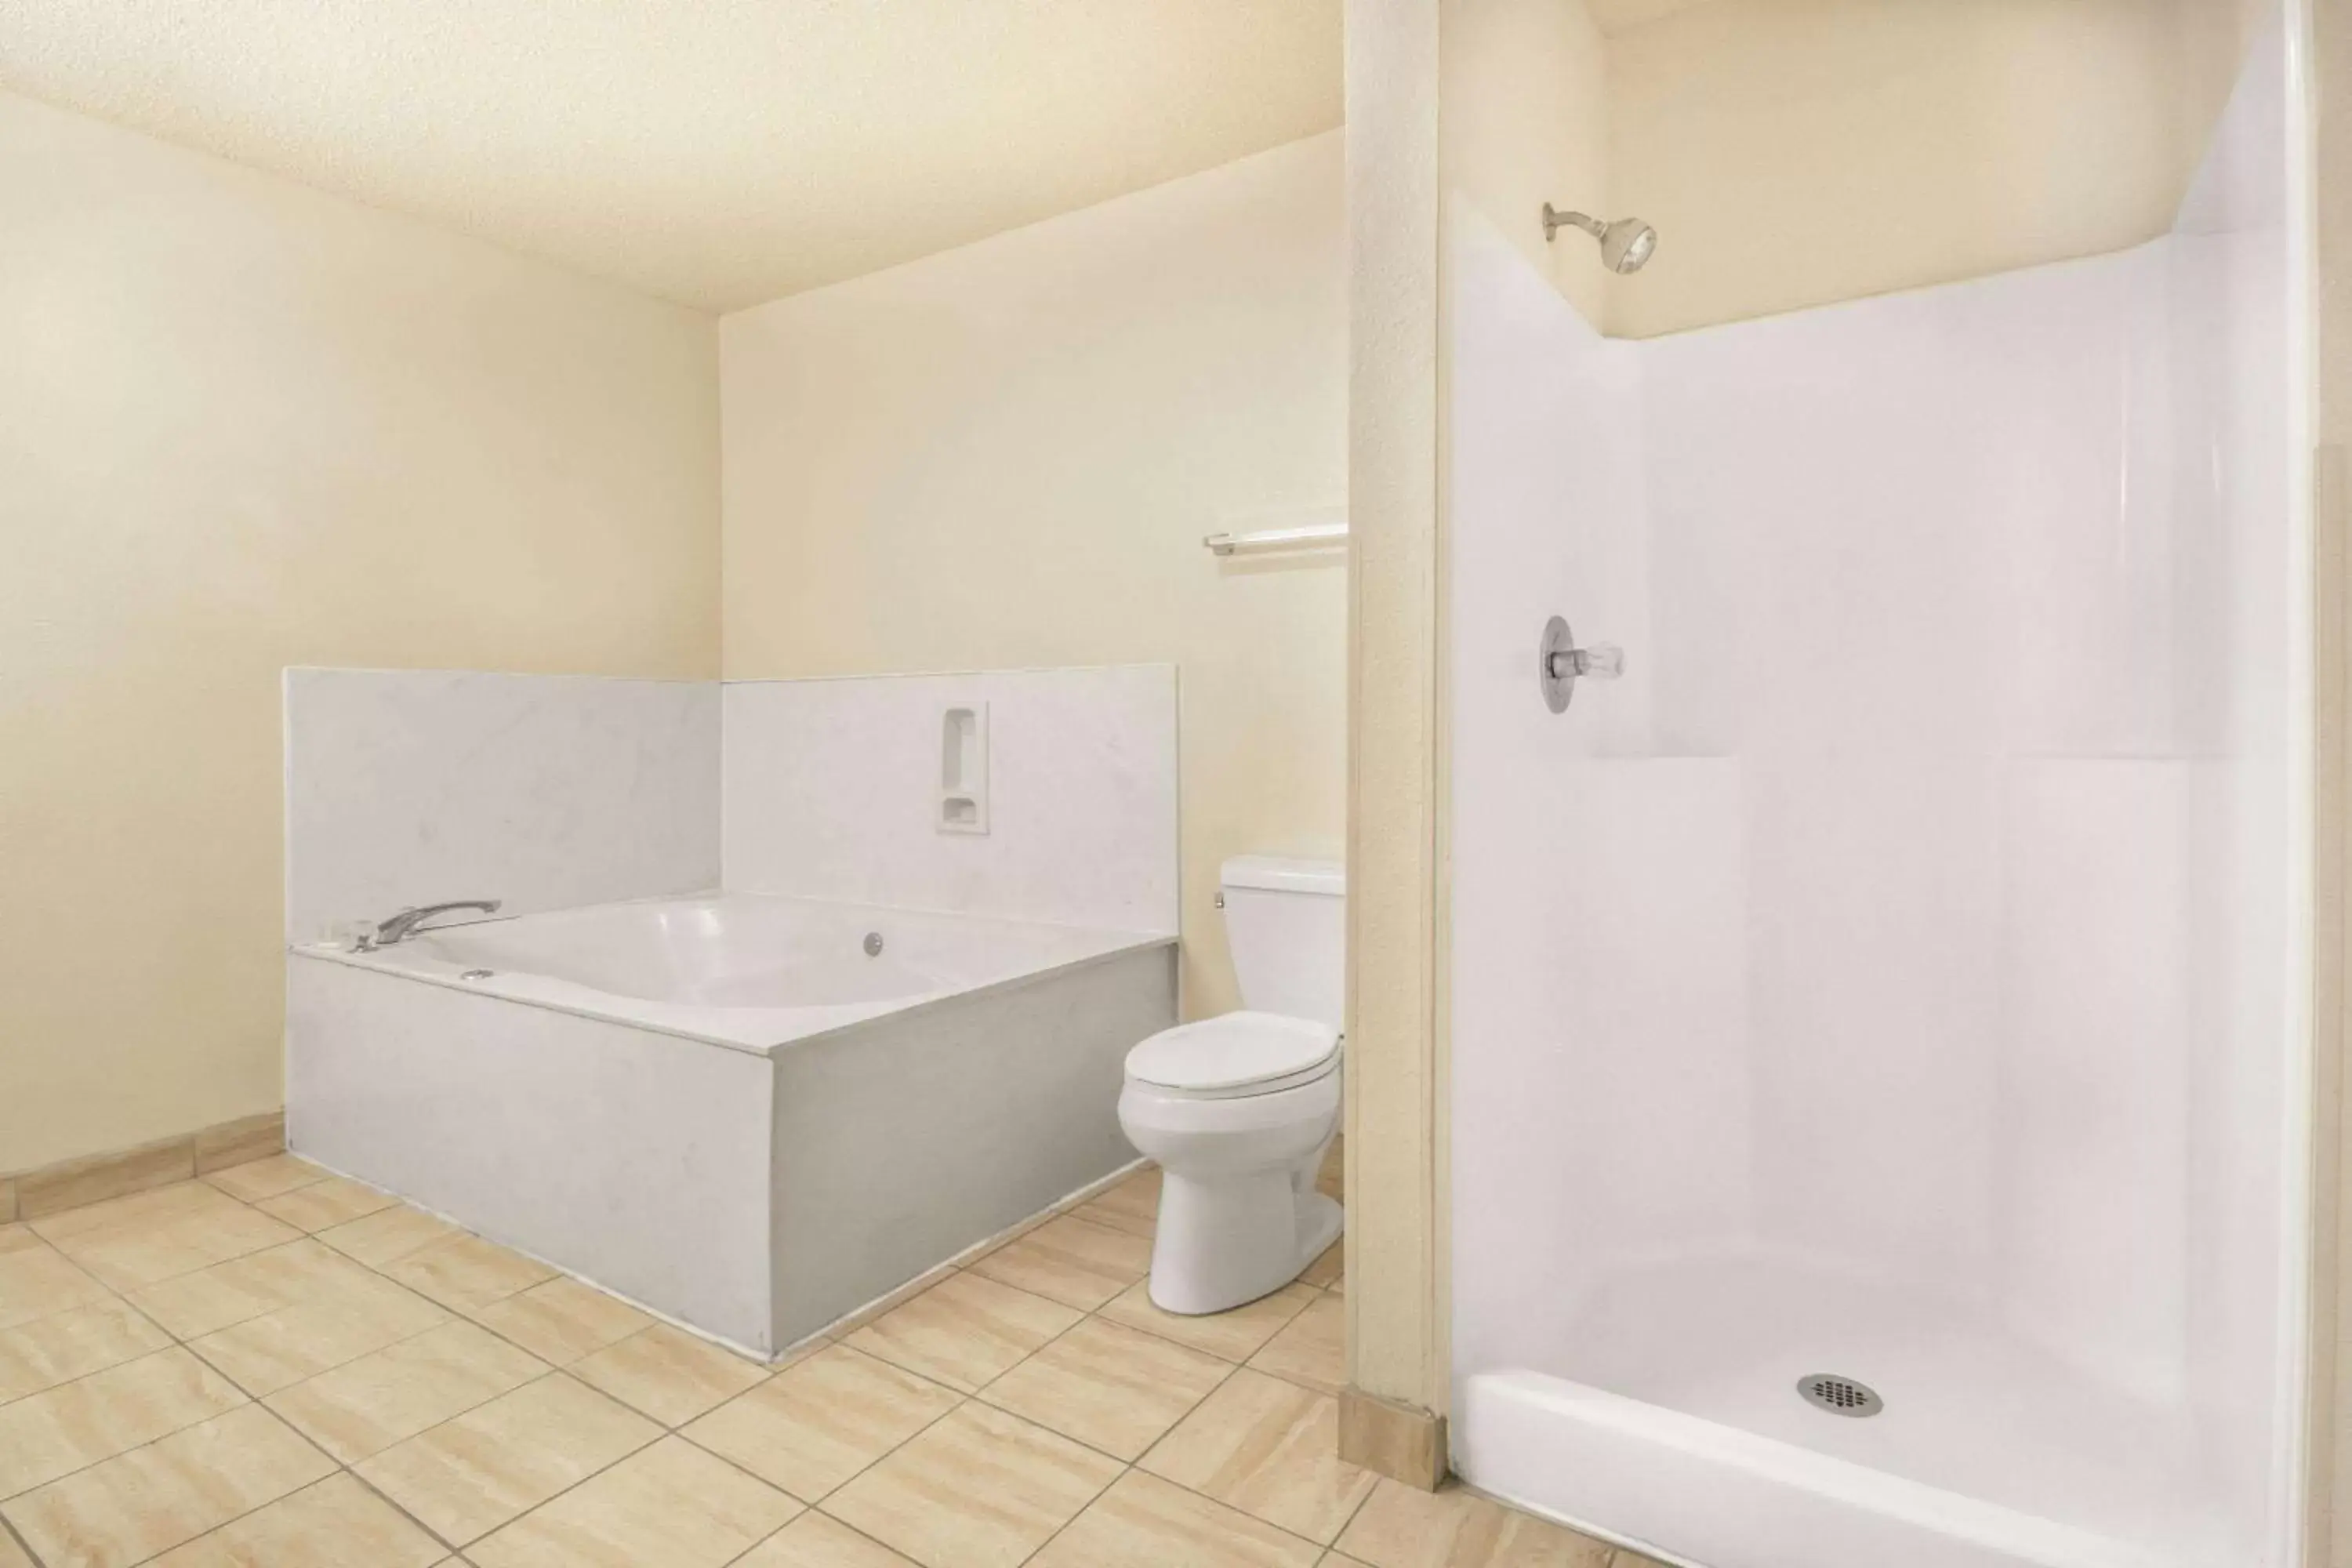 TV and multimedia, Bathroom in Days Inn by Wyndham San Antonio Interstate Hwy 35 North